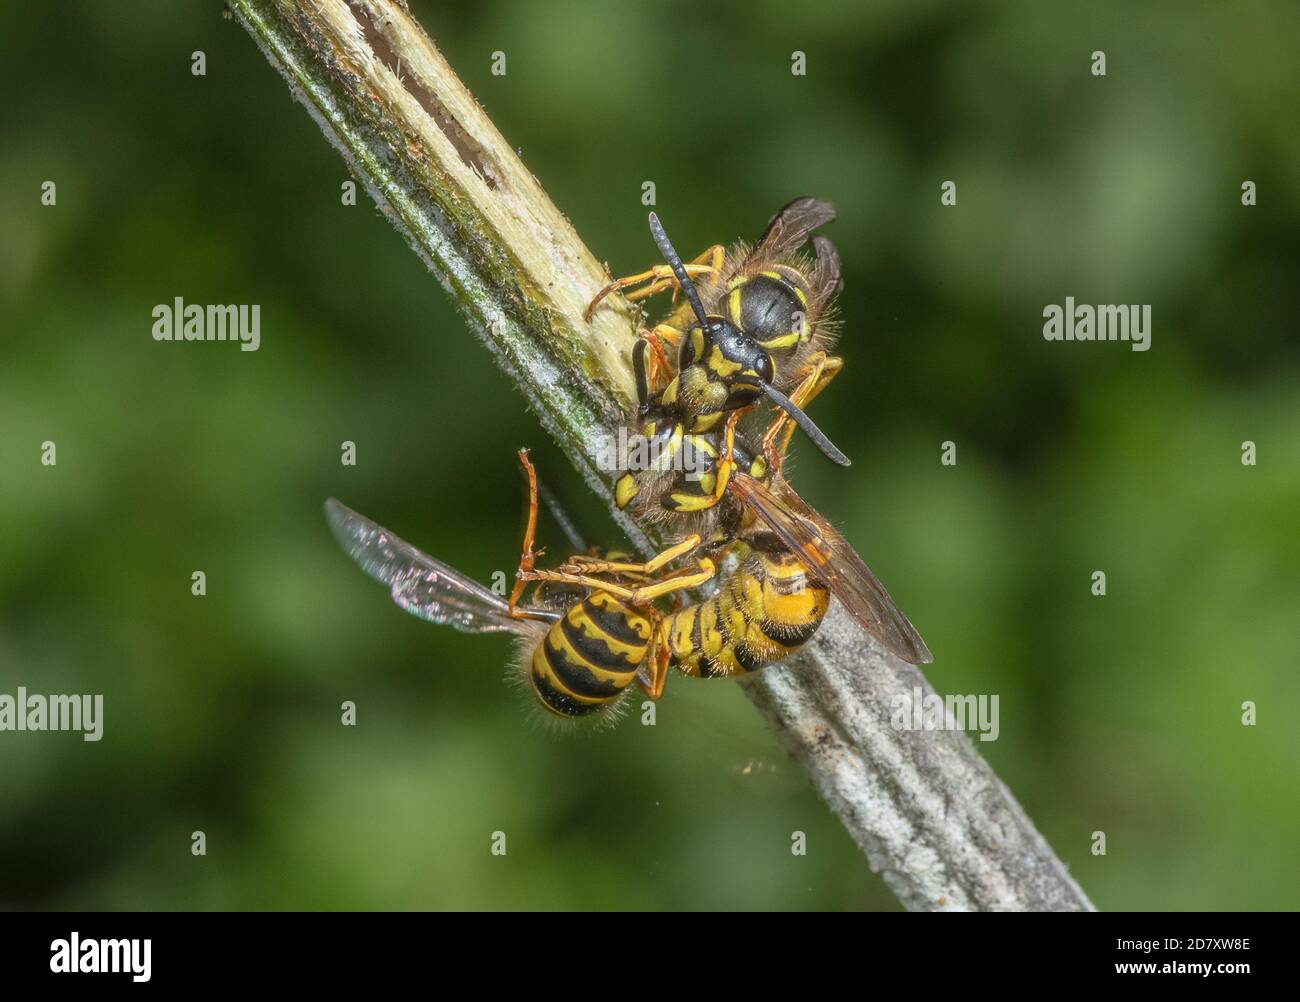 Groupe de Wasps allemands, Vespula germanica, interagissant au niveau de la sève sucrée de la plaie, sur la tige de Hogweed. Les niveaux de Somerset. Banque D'Images